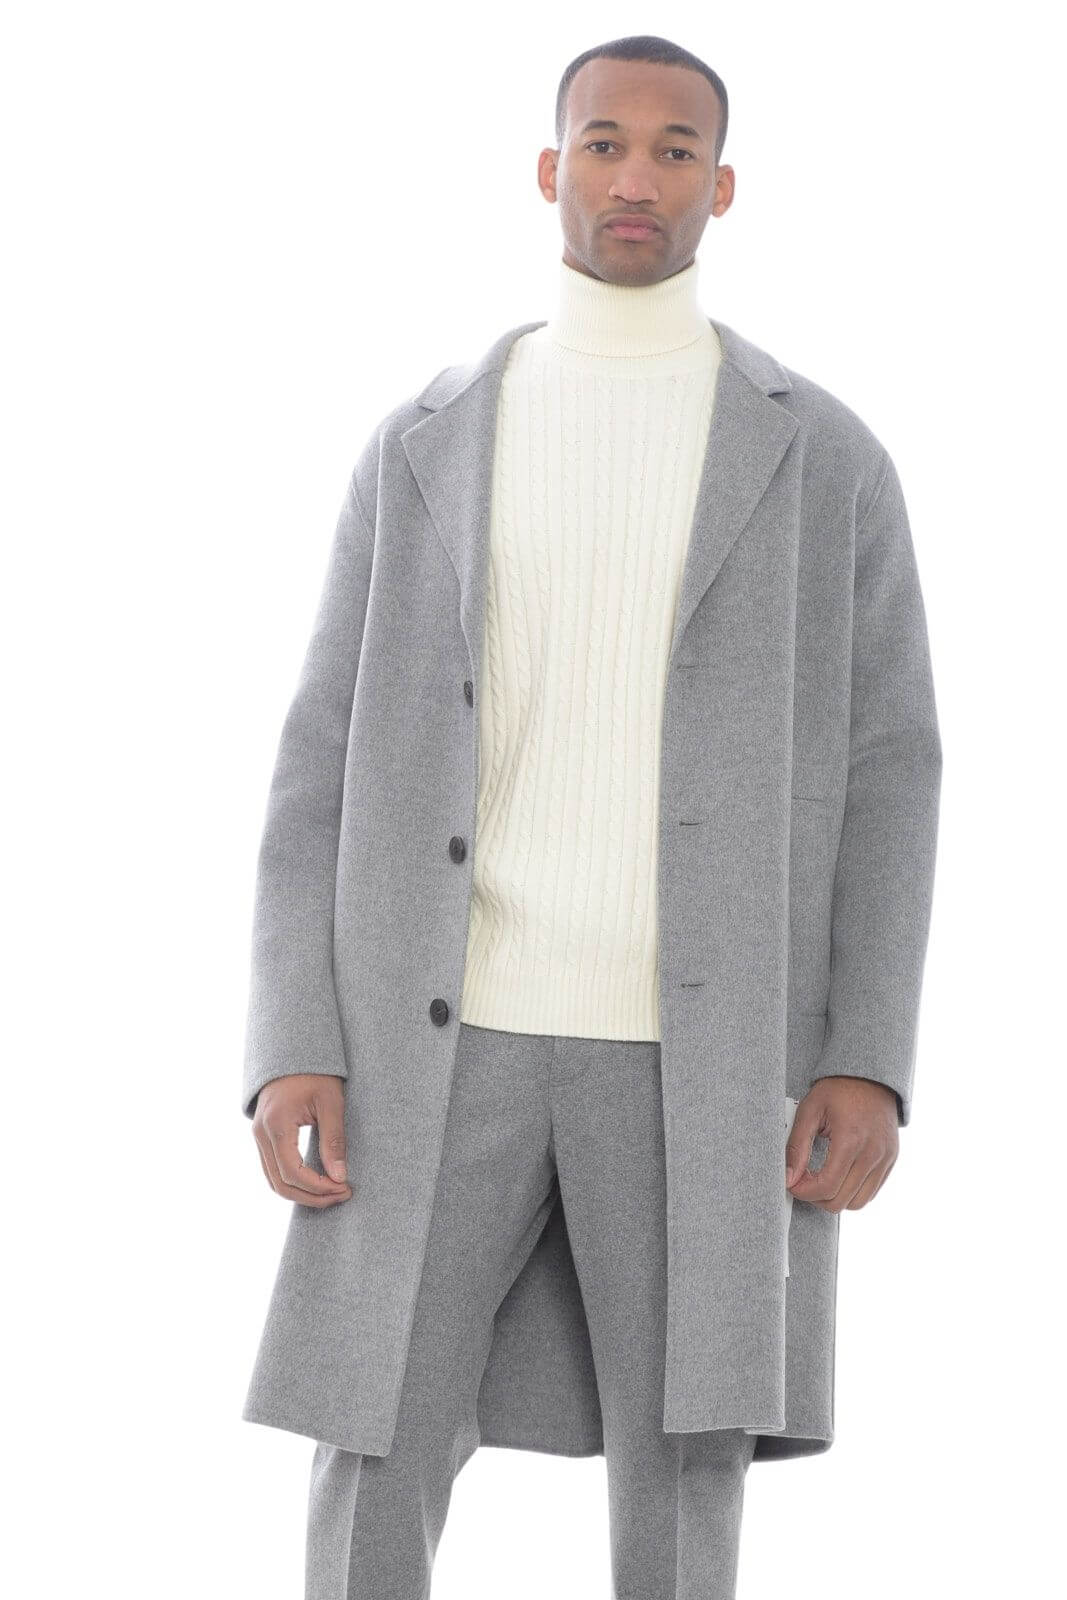 Amaranto cappotto uomo in lana cotta